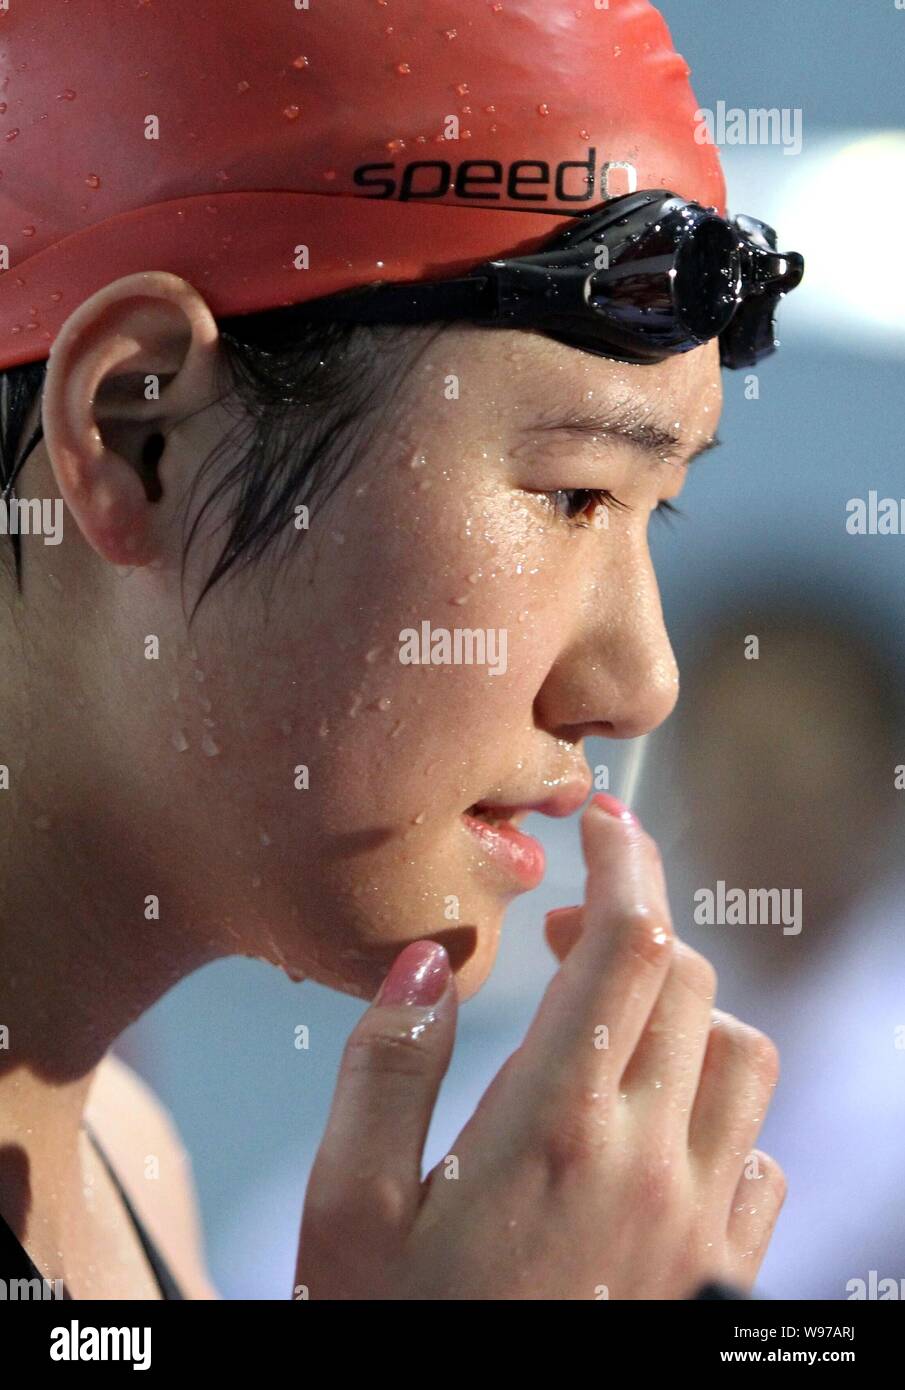 Cinese di nuoto Olympic Champion Ye Shiwen viene intervistato dopo la finale di womens 50m evento freestyle durante il 2012 nazionale cinese di nuoto Foto Stock